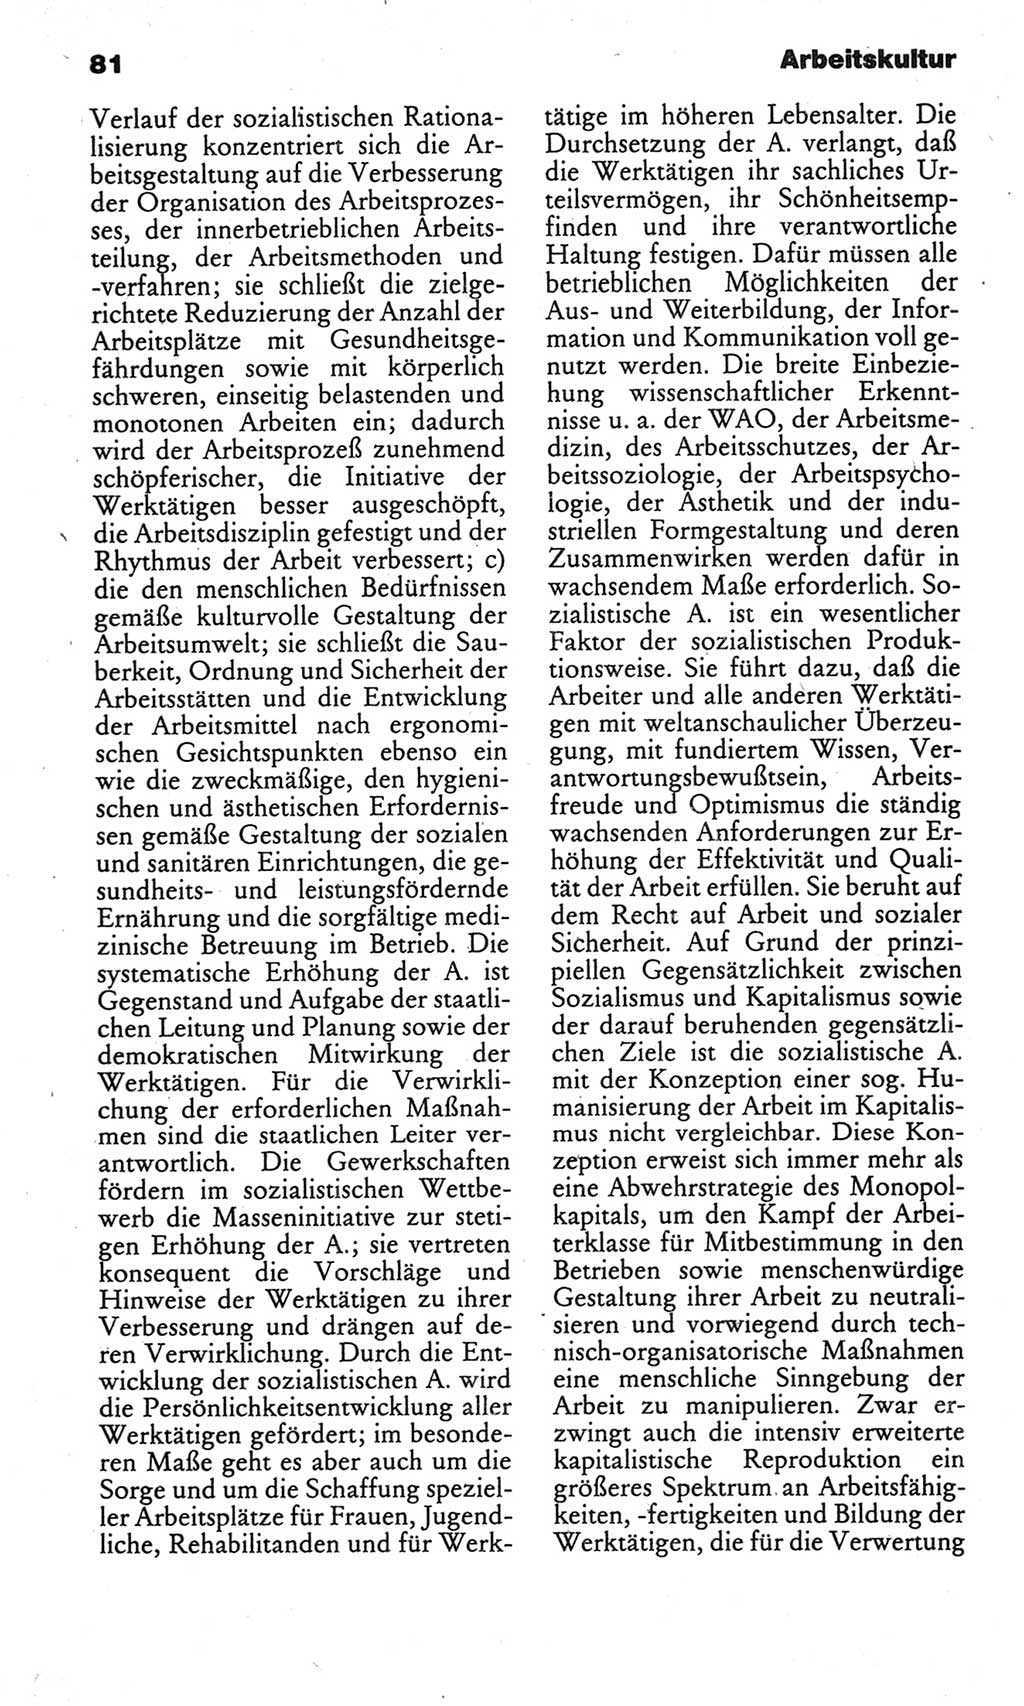 Kleines politisches Wörterbuch [Deutsche Demokratische Republik (DDR)] 1986, Seite 81 (Kl. pol. Wb. DDR 1986, S. 81)